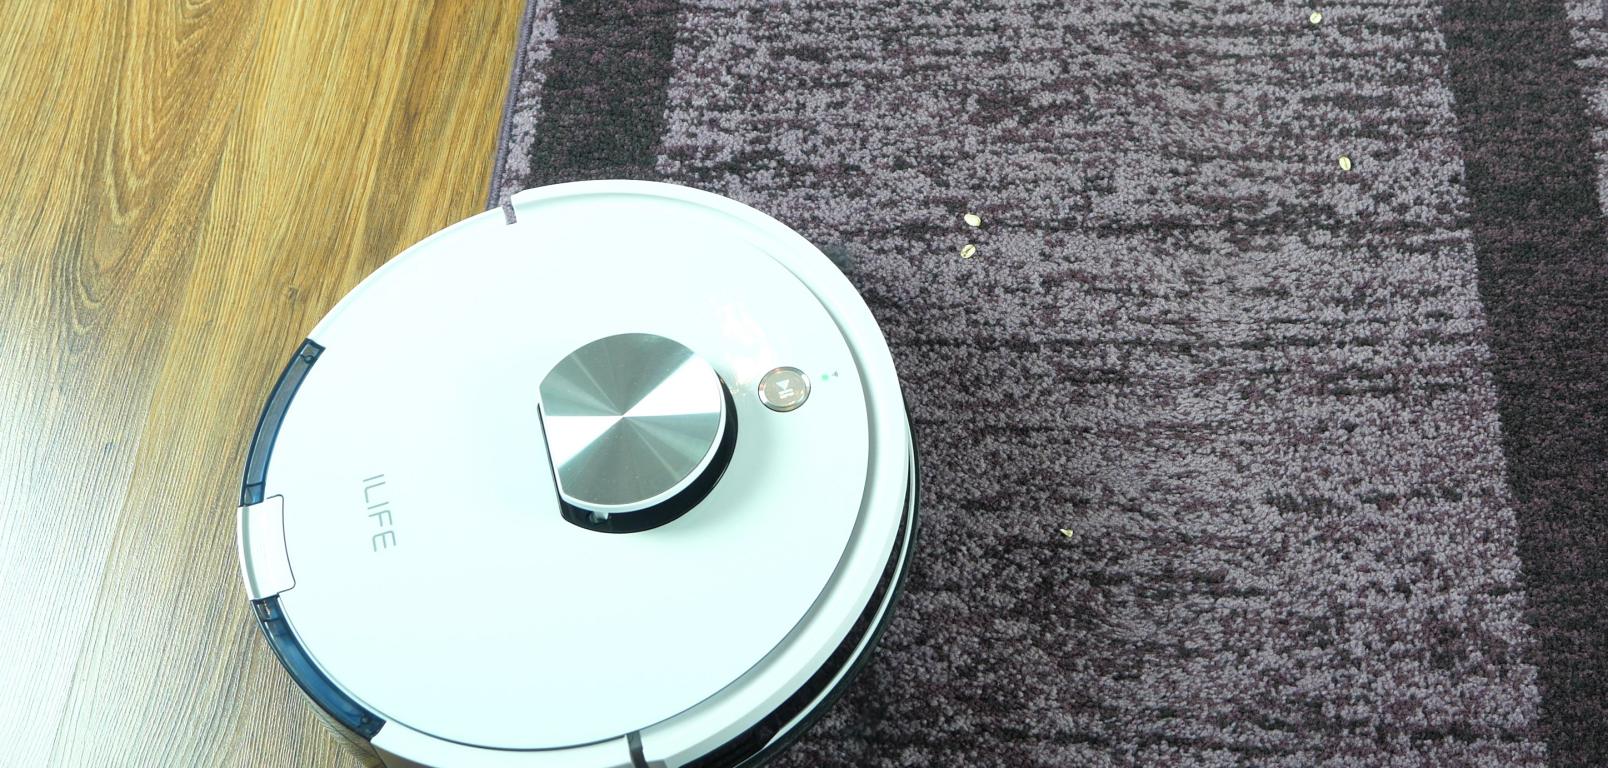 iLife L100 - recenzja robota sprzątającego - odkurzanie na dywanach